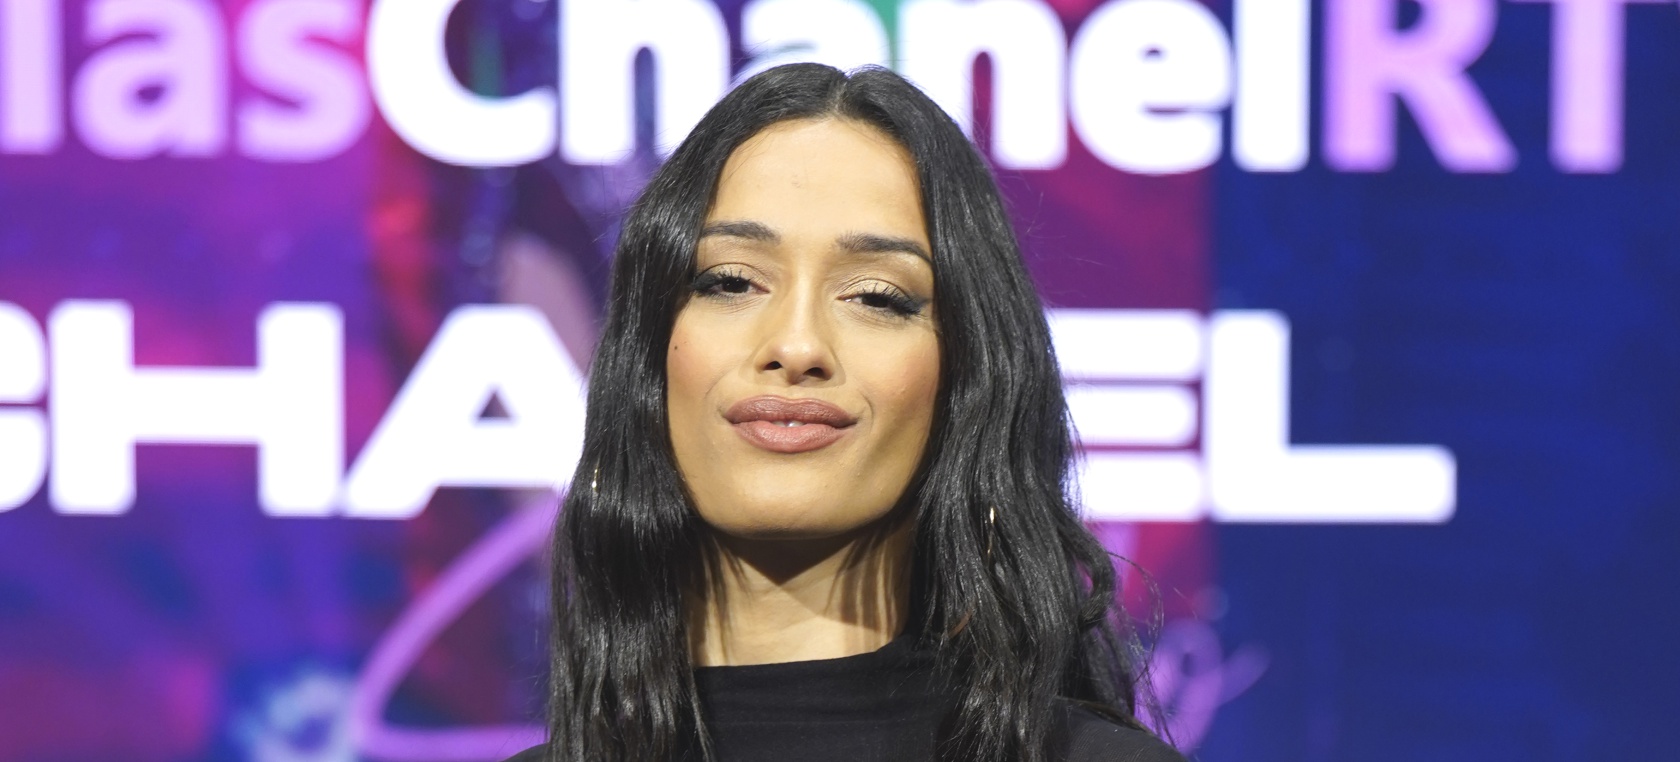 Chanel hace balance tras quedar tercera en Eurovisión: “No hemos trabajado para callar bocas”